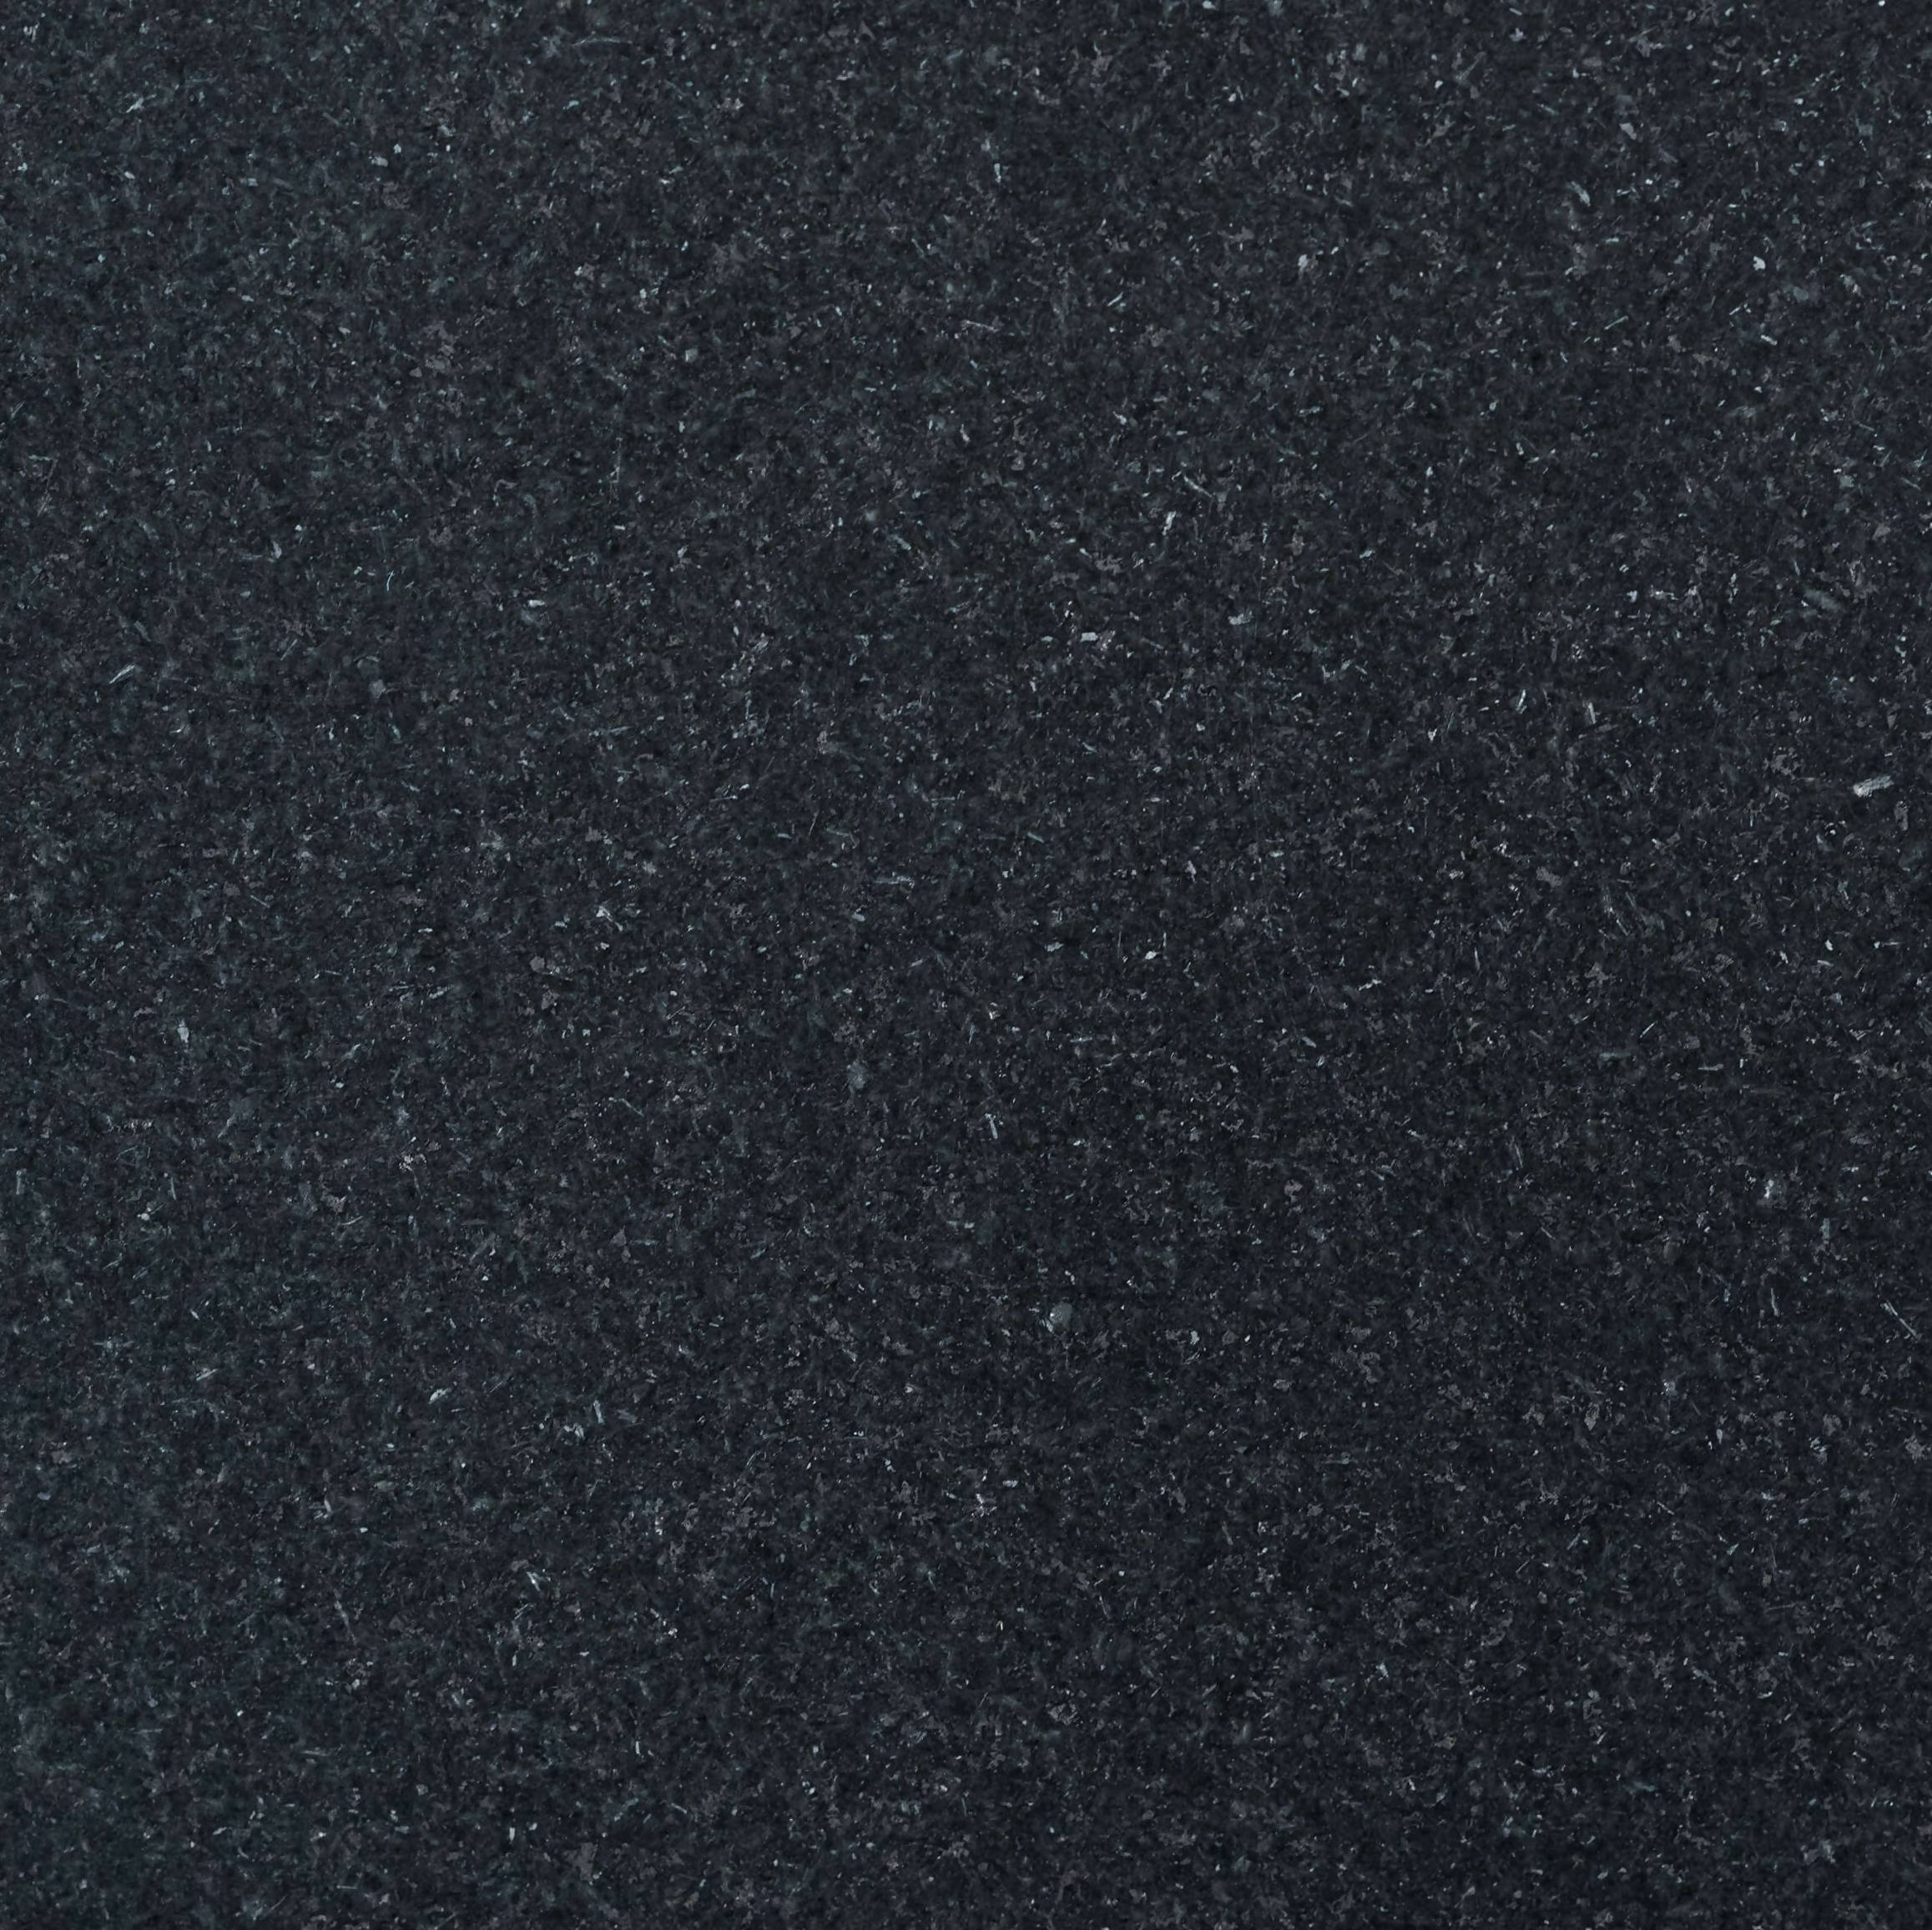 ABSOLUTE BLACK GRANITE,Granite,Work-Tops,www.work-tops.com